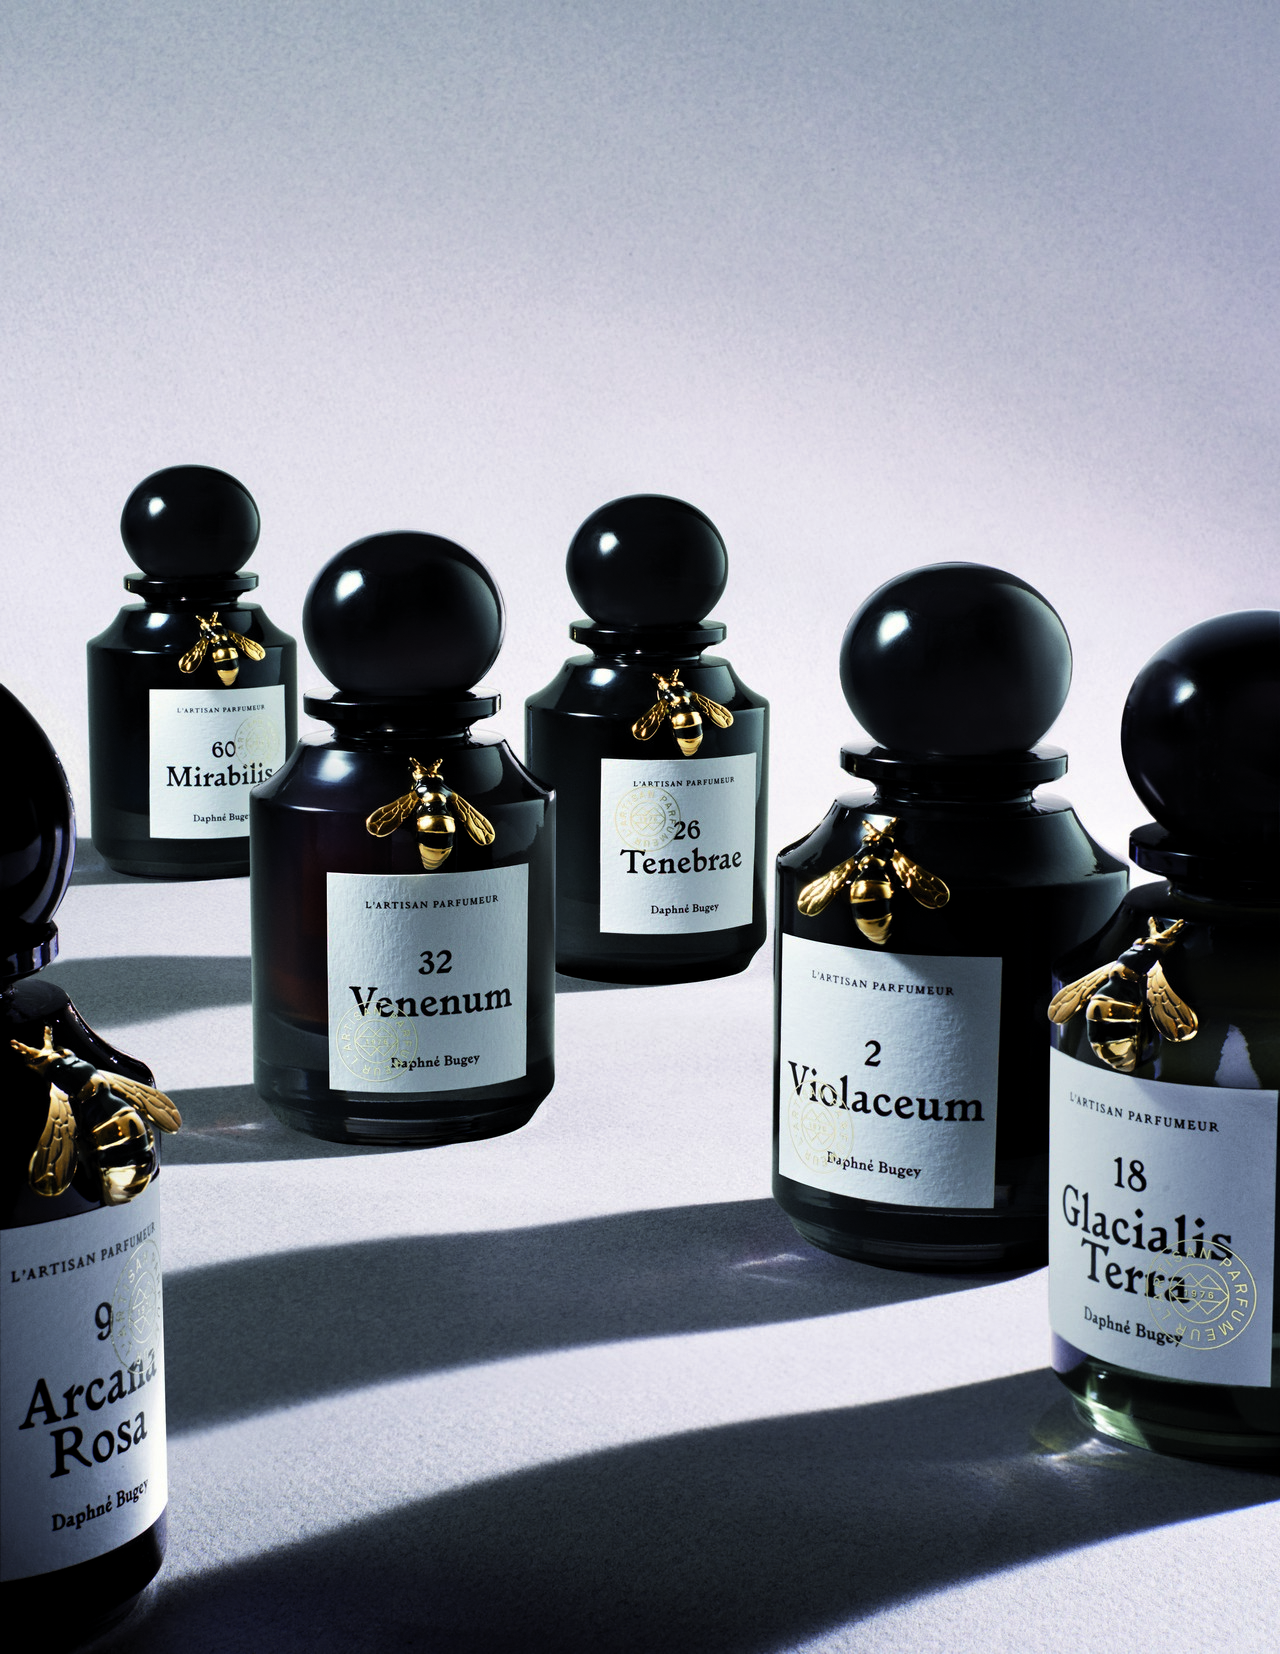 L’Artisan Parfumeur presenta la collezione Natura Fabularis, le foto